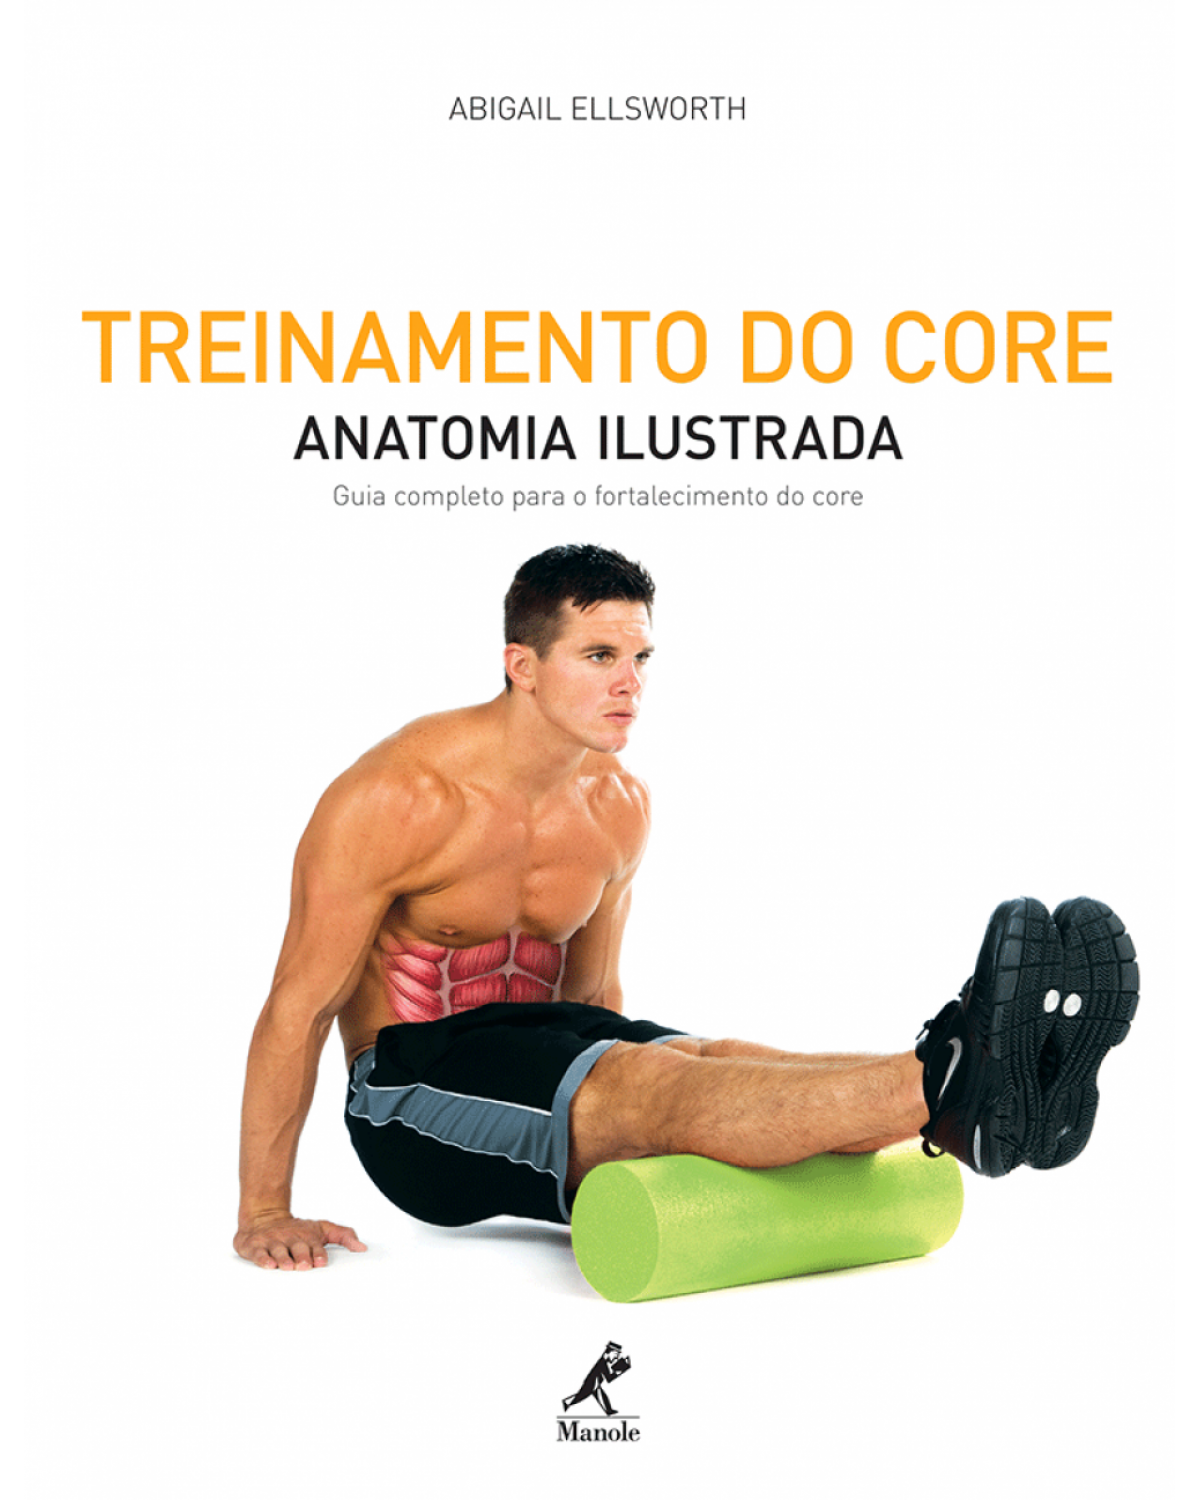 Treinamento do core - Anatomia ilustrada: guia completo para o fortalecimento do core - 1ª Edição | 2012